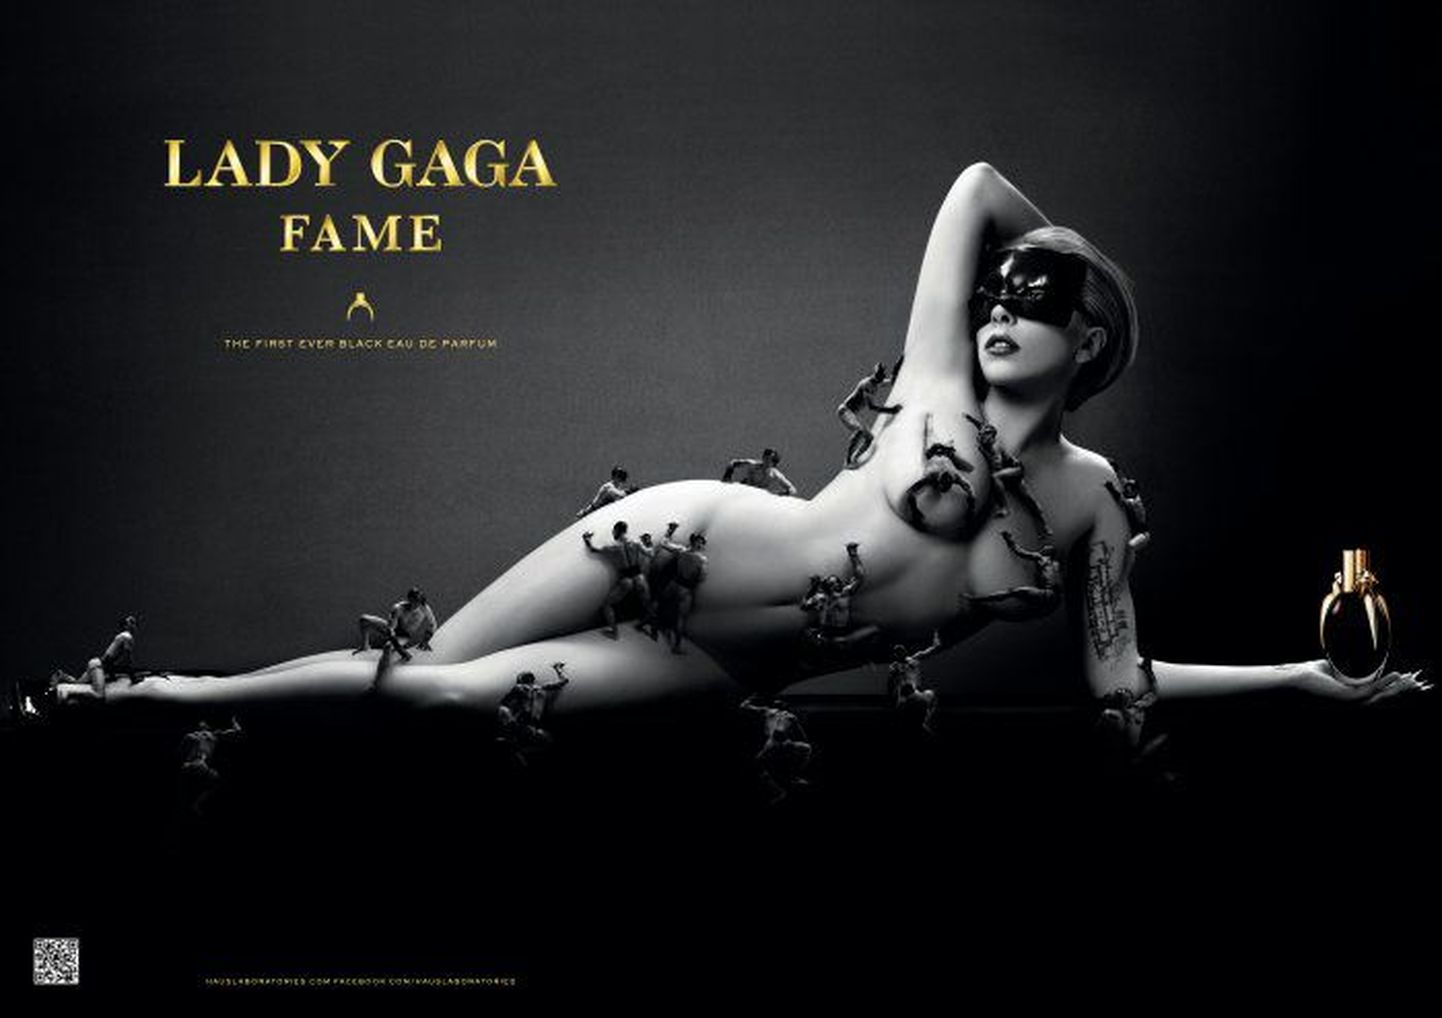 Lady Gaga "Fame"